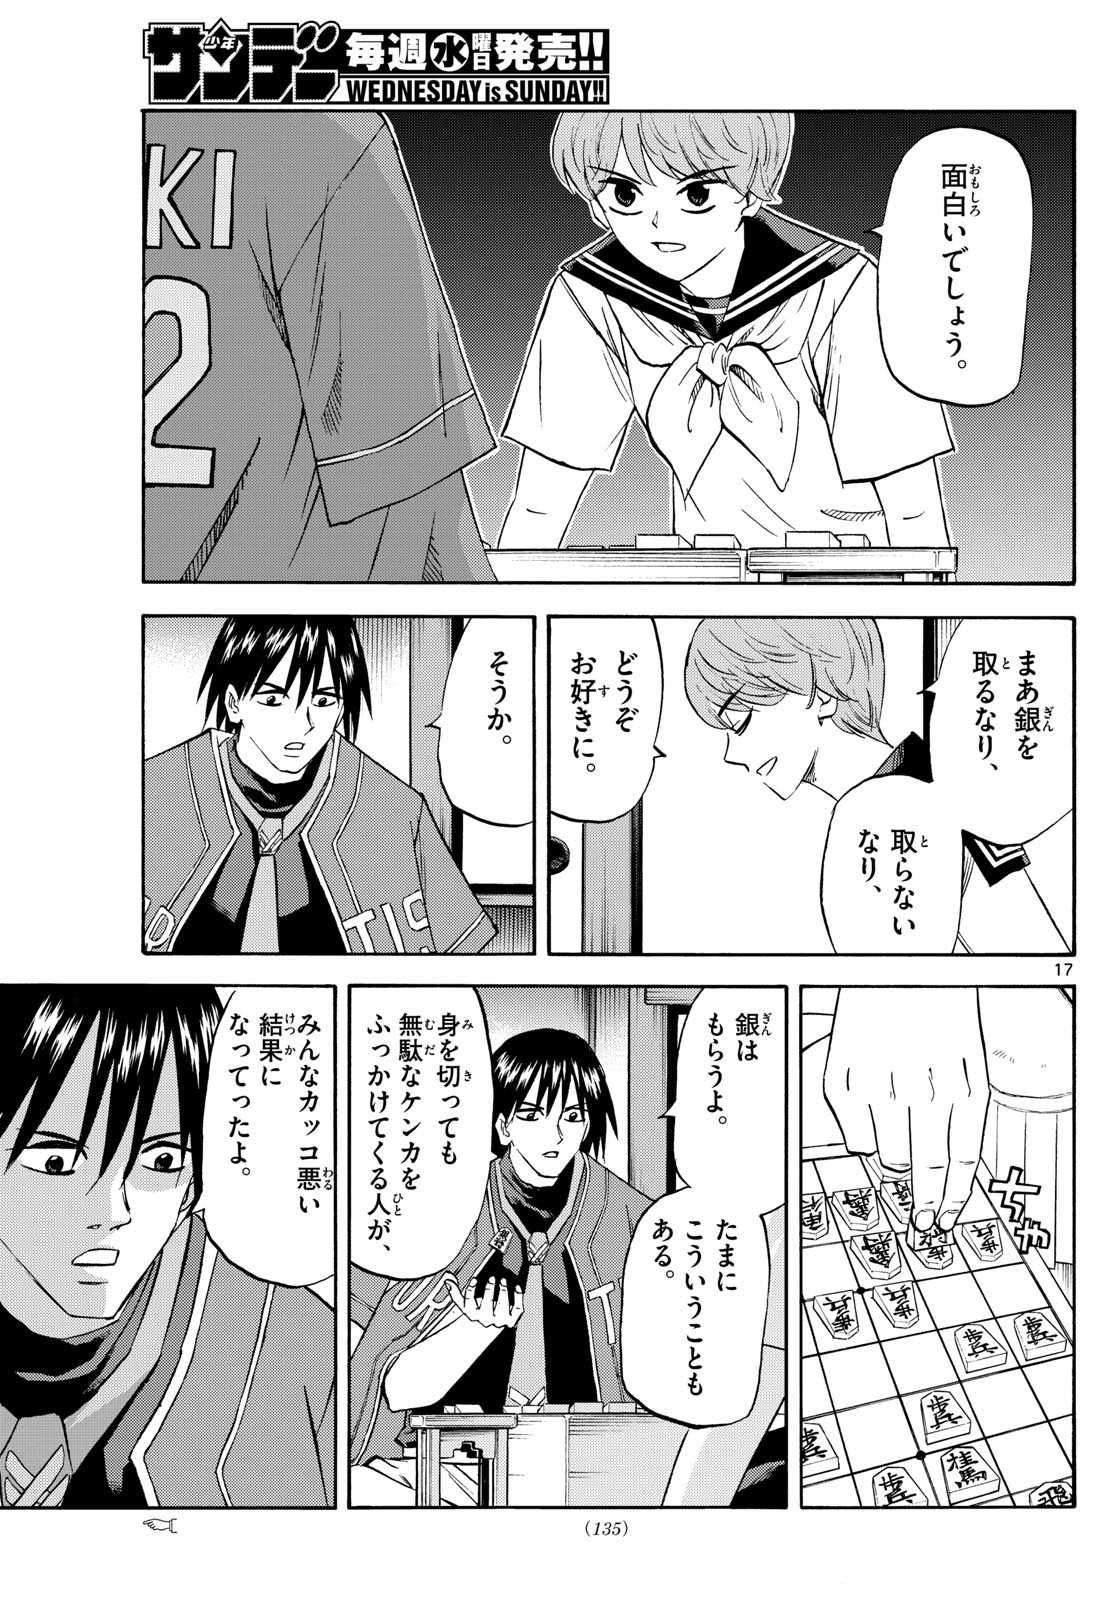 Tatsu to Ichigo - Chapter 197 - Page 17